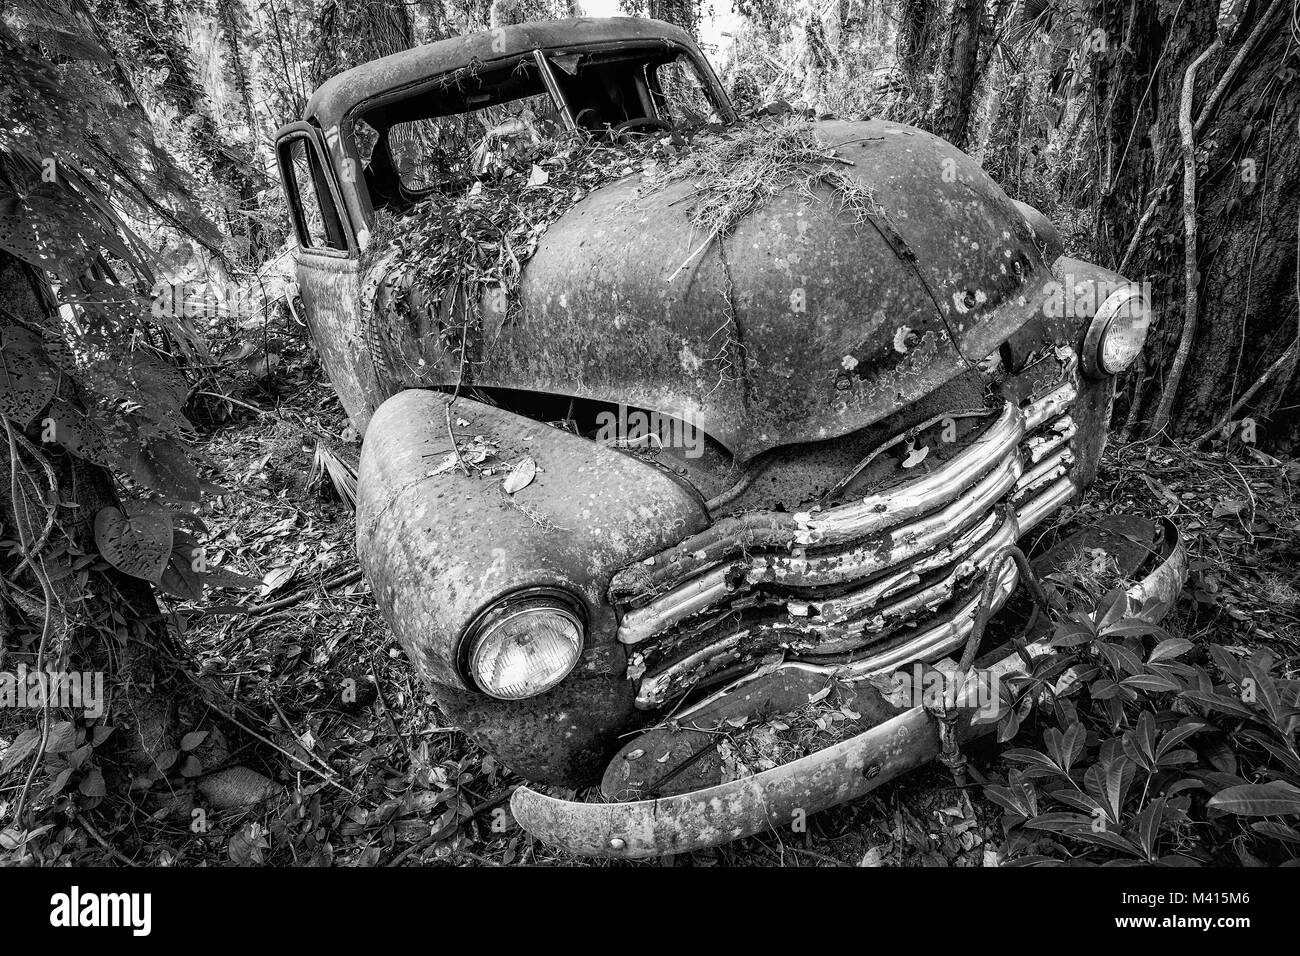 Old rusted Chevy truck dans les bois, trouvés dans Micanopy, Floride Banque D'Images